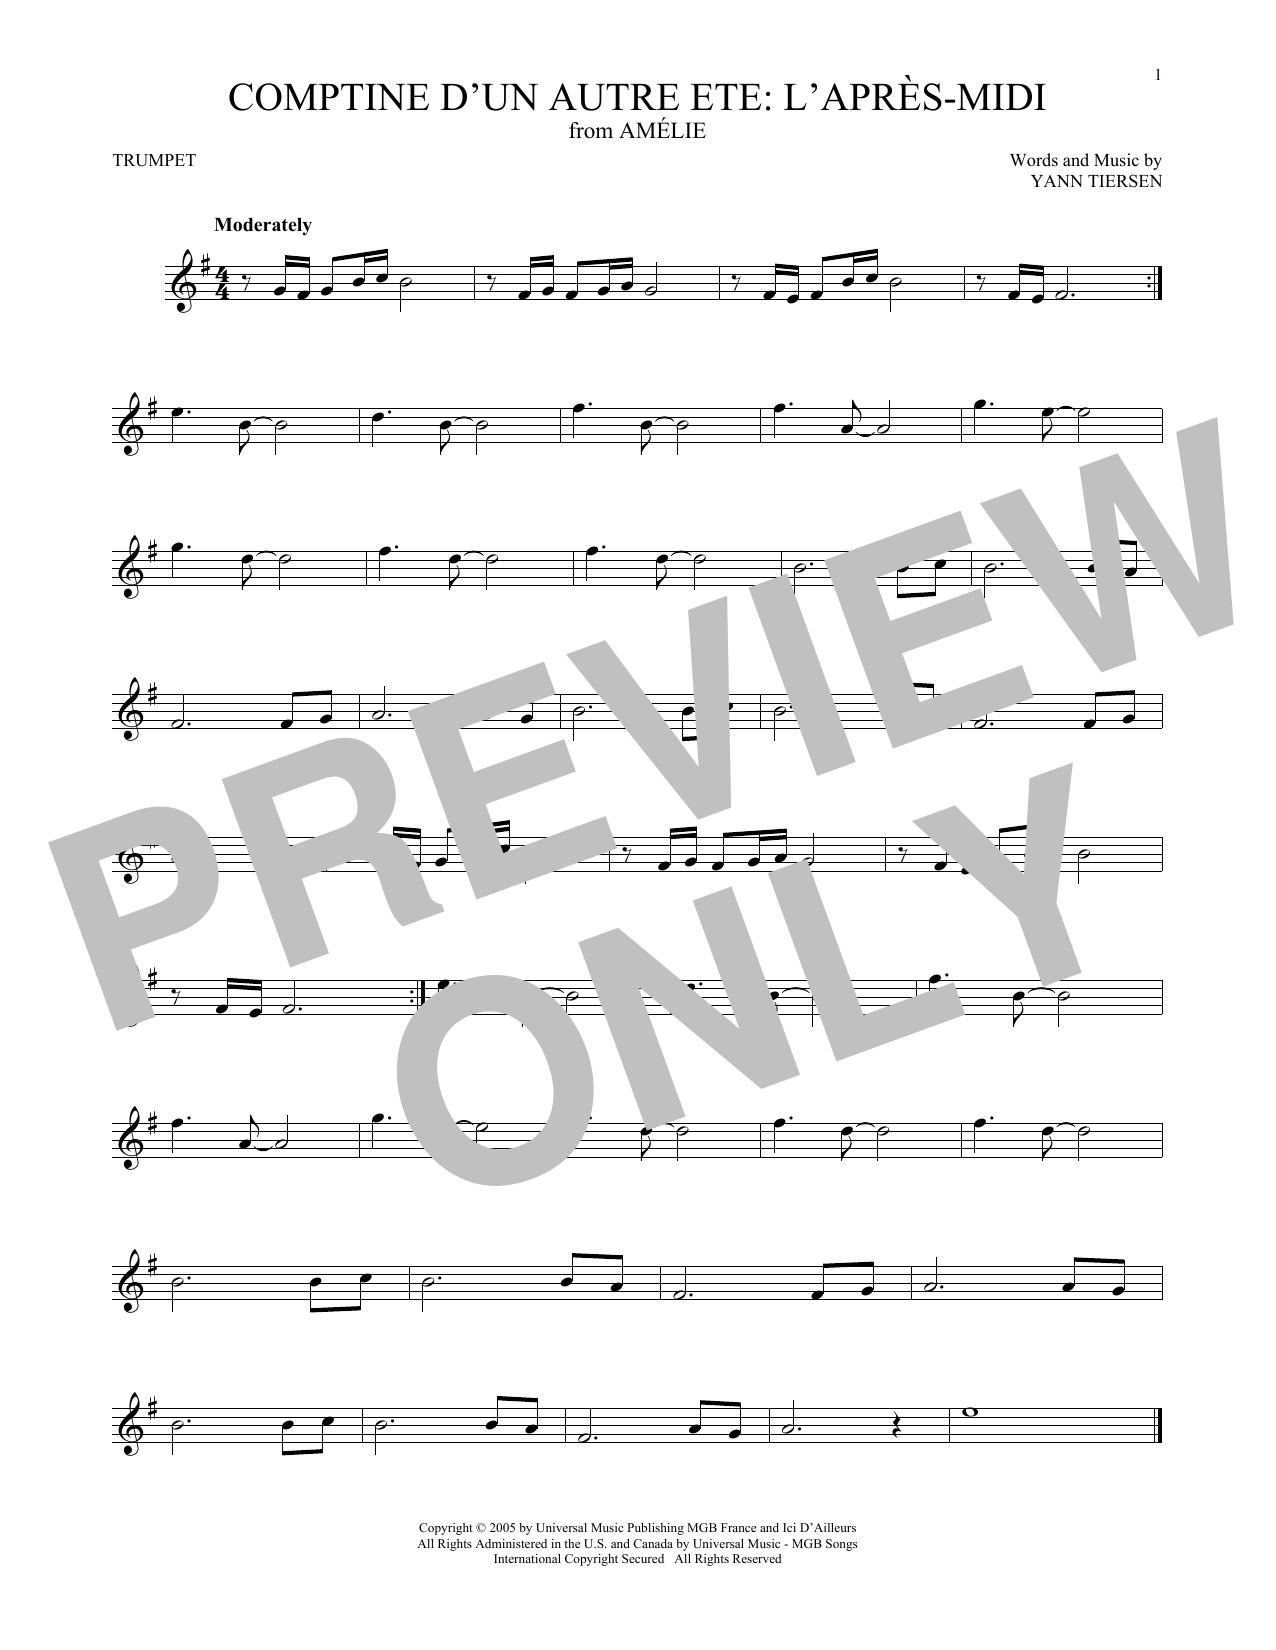 Comptine d'un autre t: L'aprs-midi (from Amelie) (Trumpet Solo) von Yann Tiersen